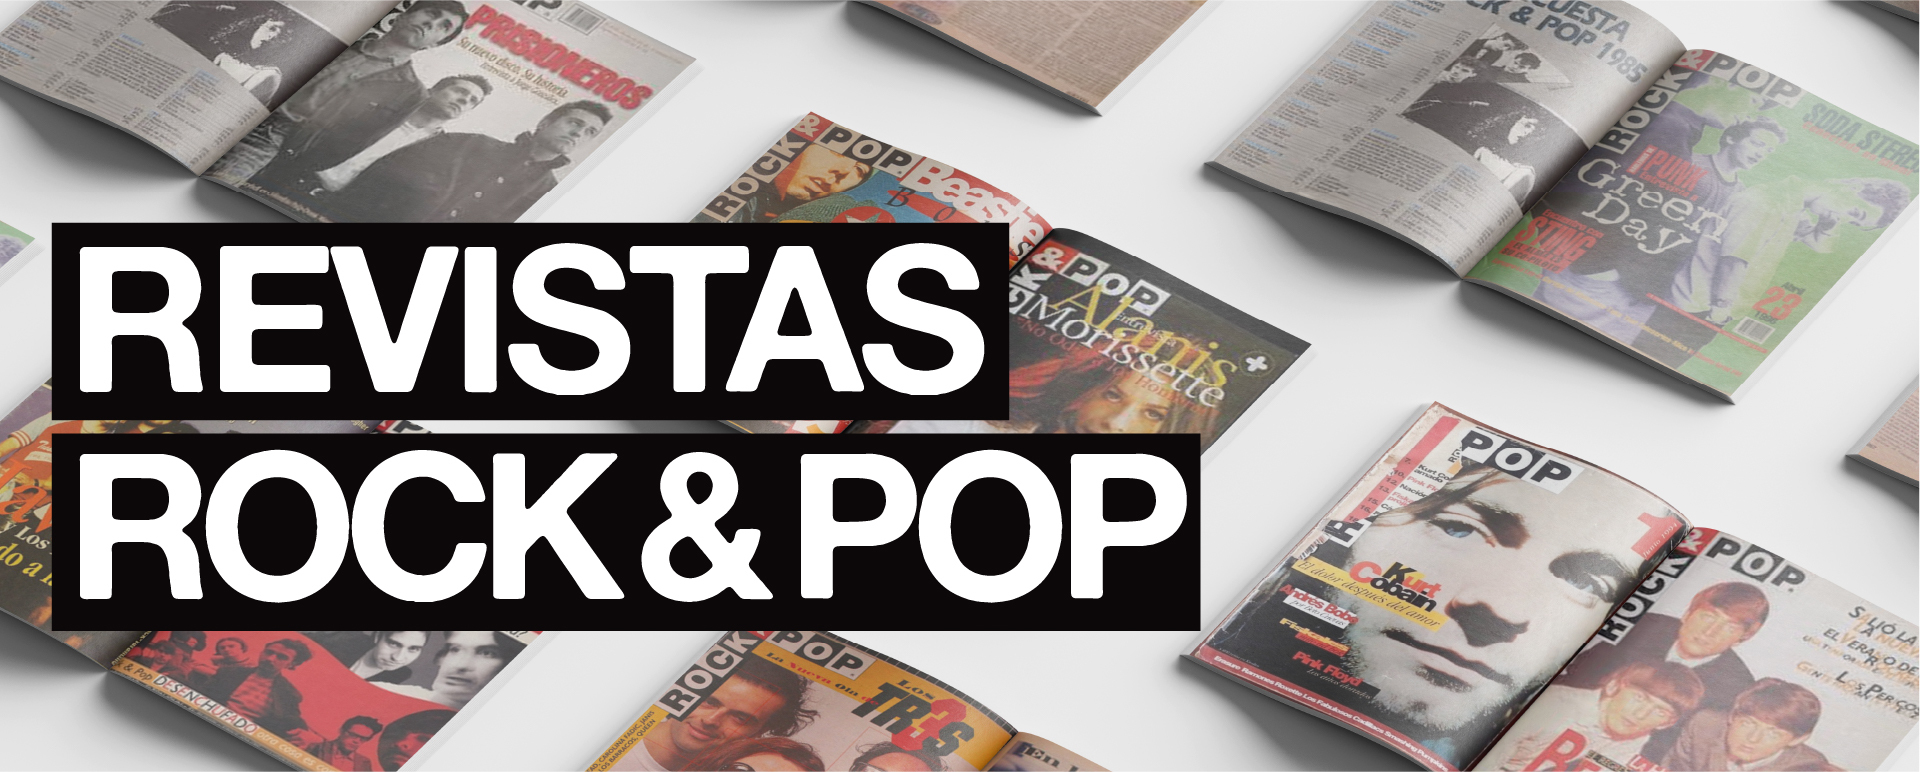 Revistas Rock & Pop